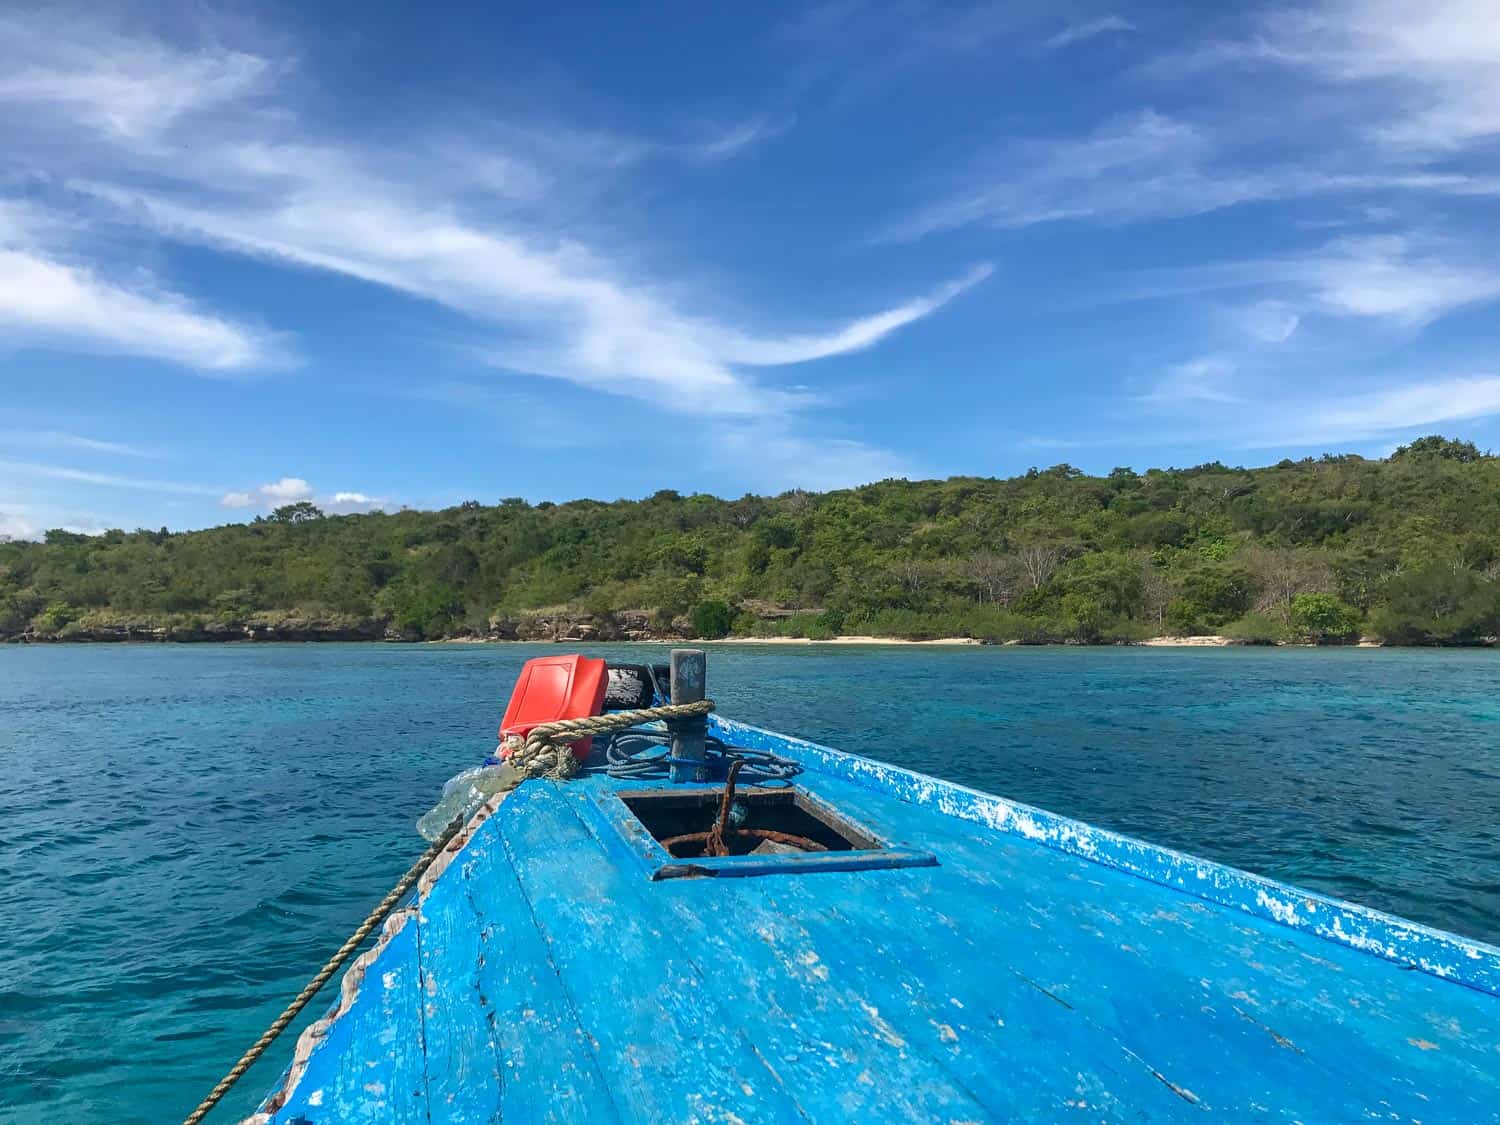 Menjangan Island snorkelling trip in Bali